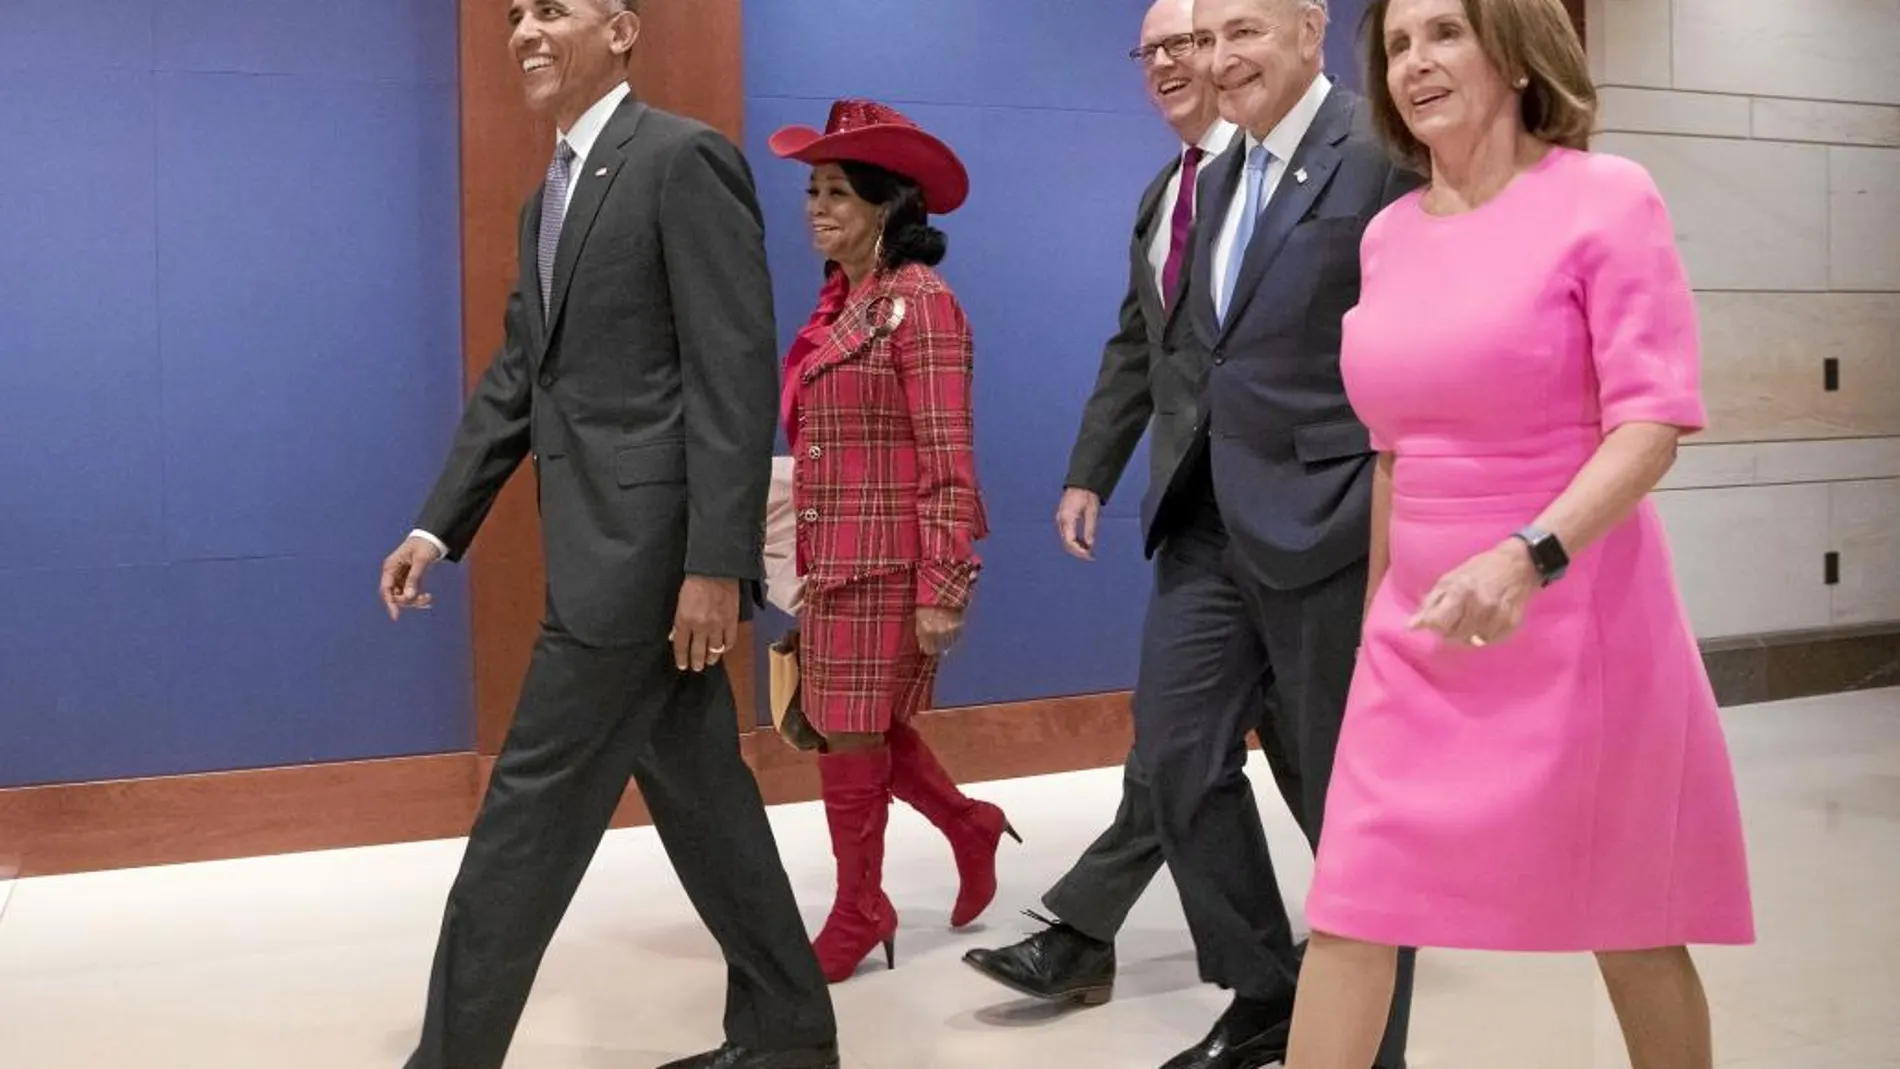 Obama camina junto a los legisladores Wilson (izquierda), Crowley, Schumer y Nancy Pelosi ayer en la Cámara Baja